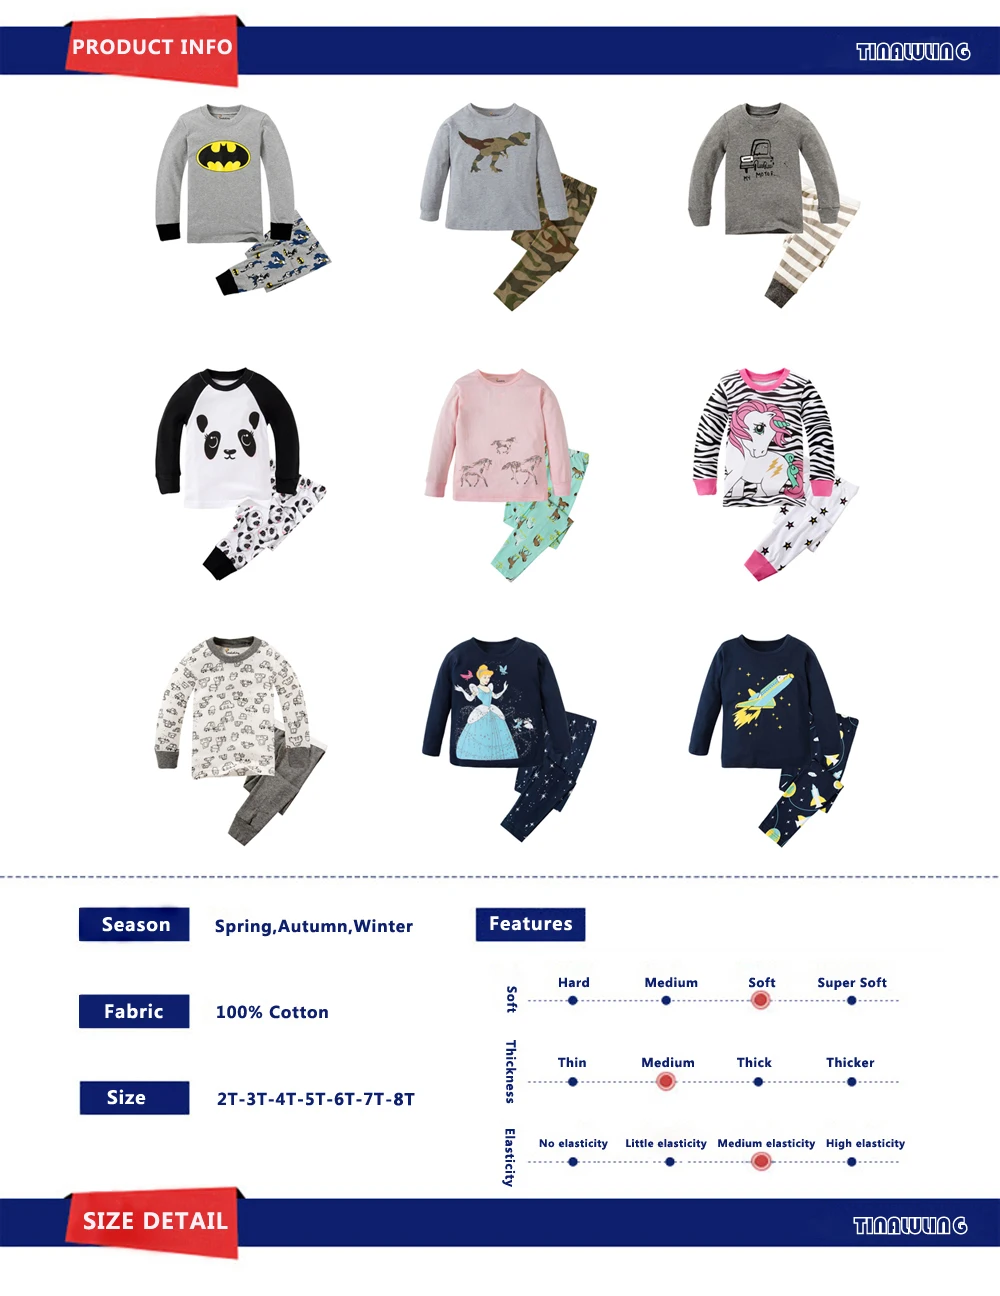 Детские пижамные комплекты Supreman одежда для сна с машинками для мальчиков детская одежда для сна с Бэтменом и человеком-пауком детские пижамы для девочек от 2 до 8 лет